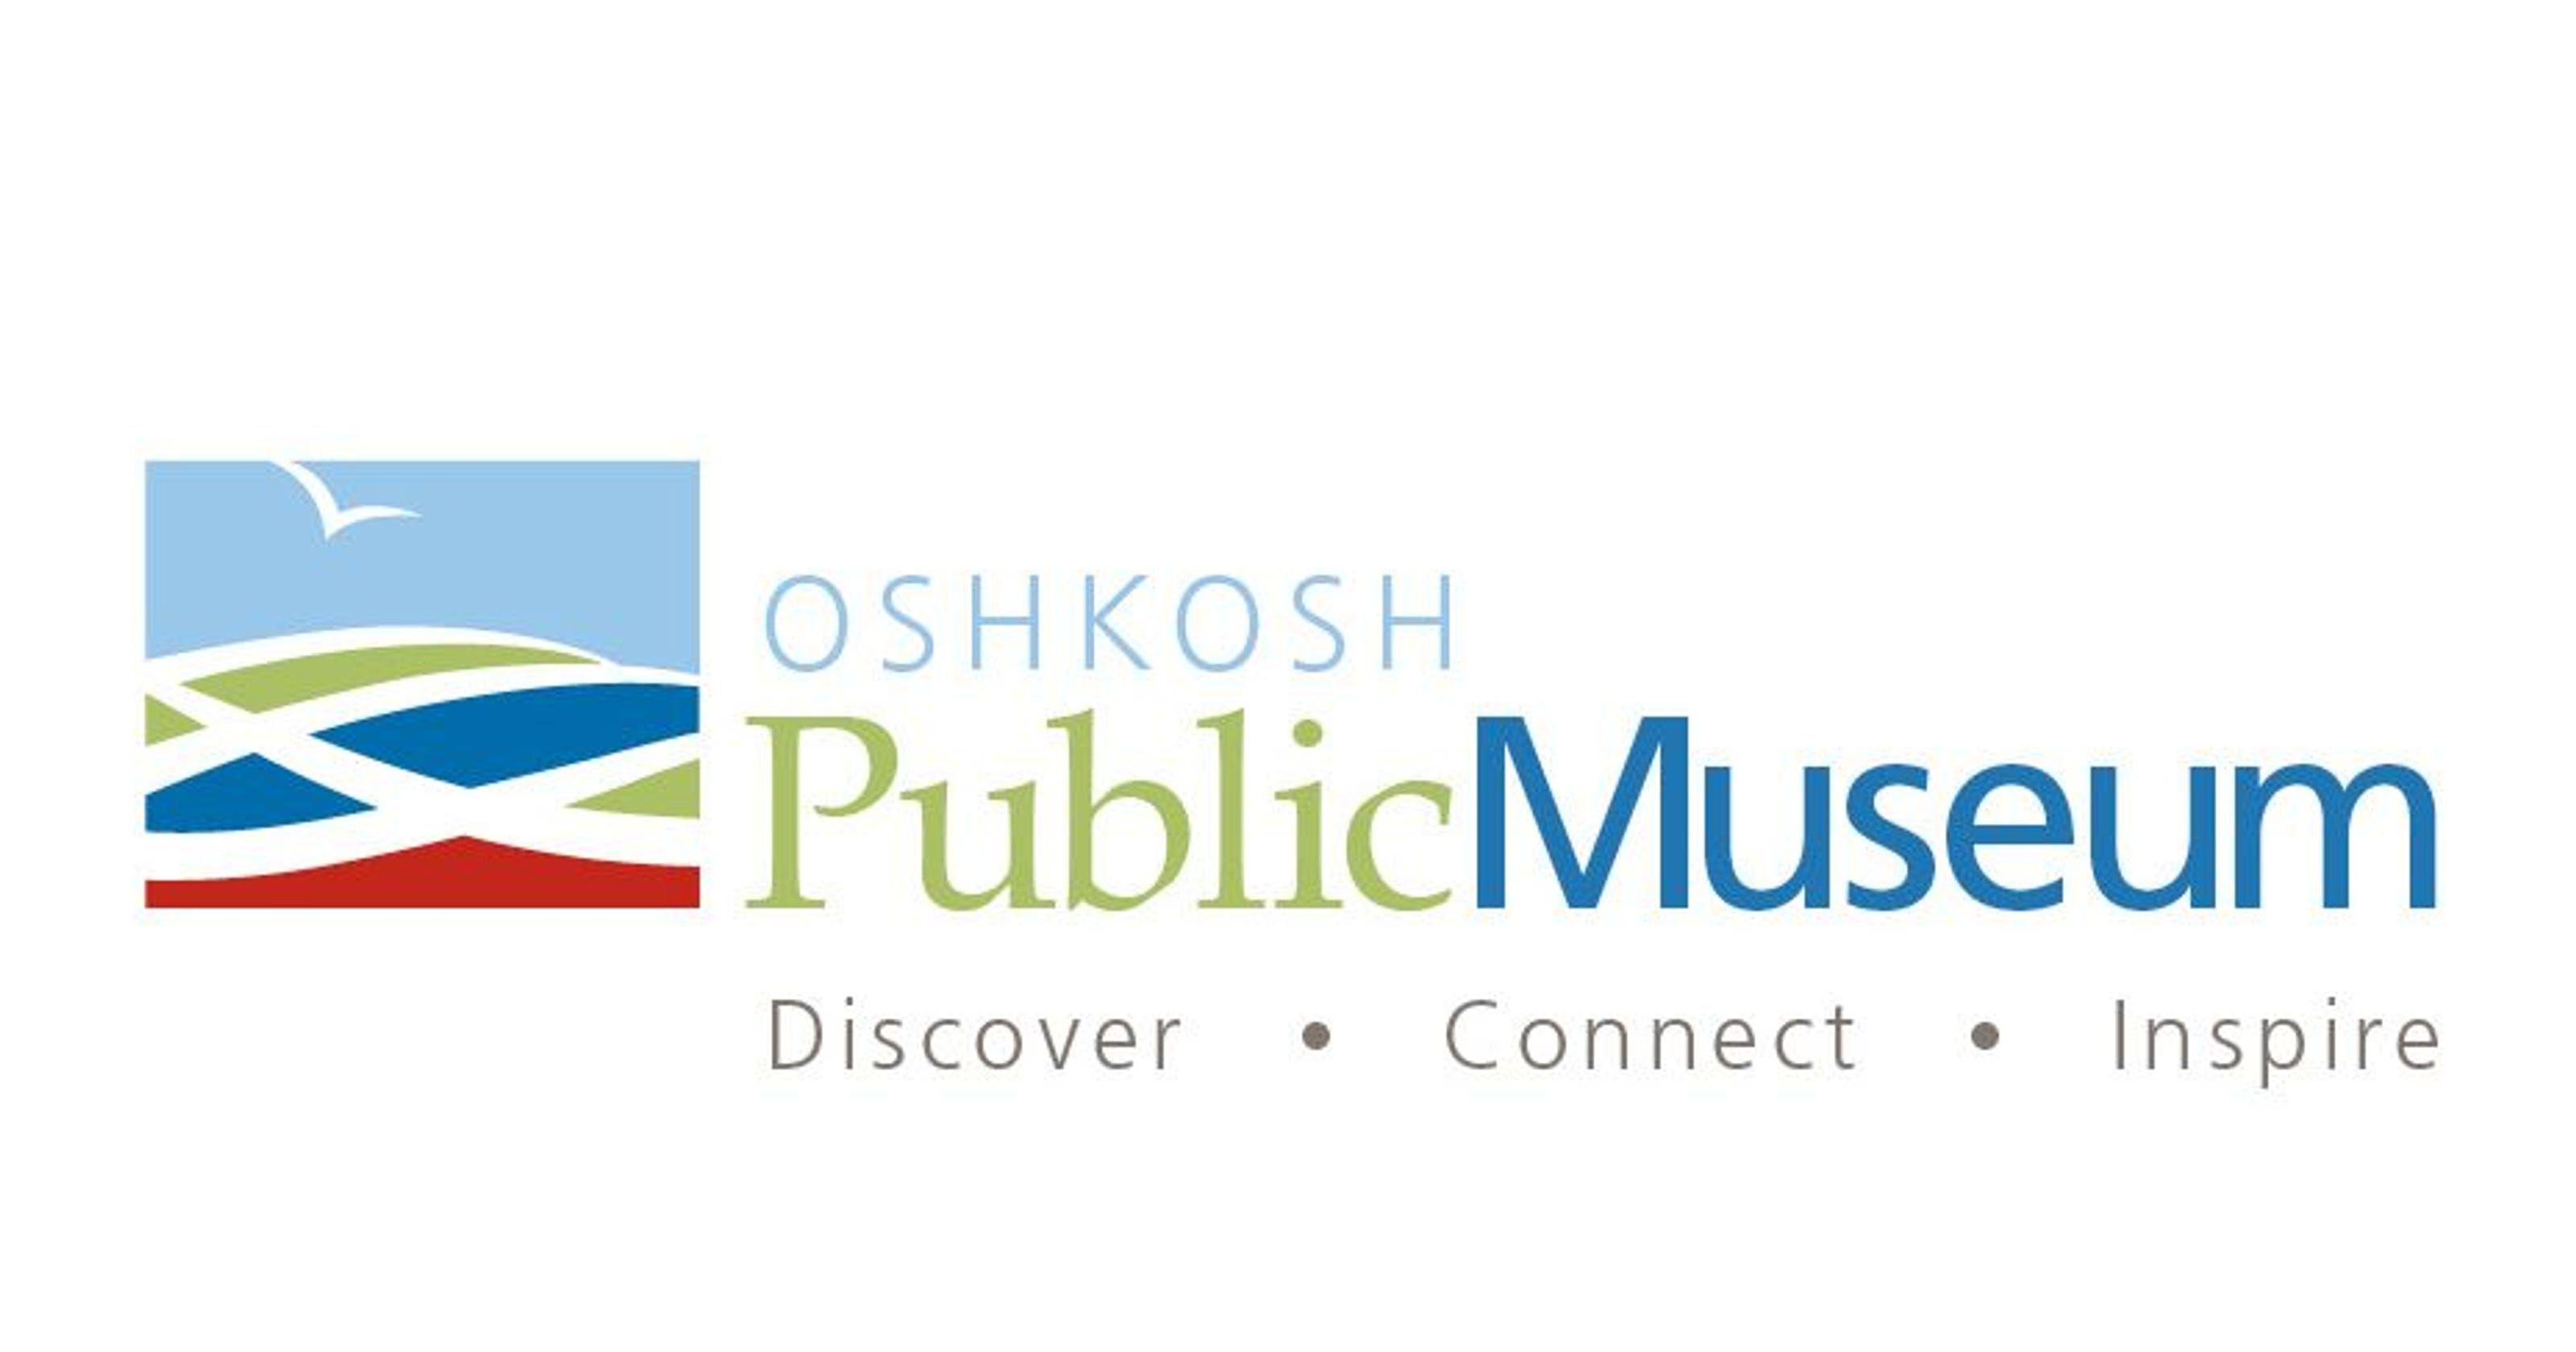 Oshkosh Logo - Oshkosh Public Museum unveils its new logo